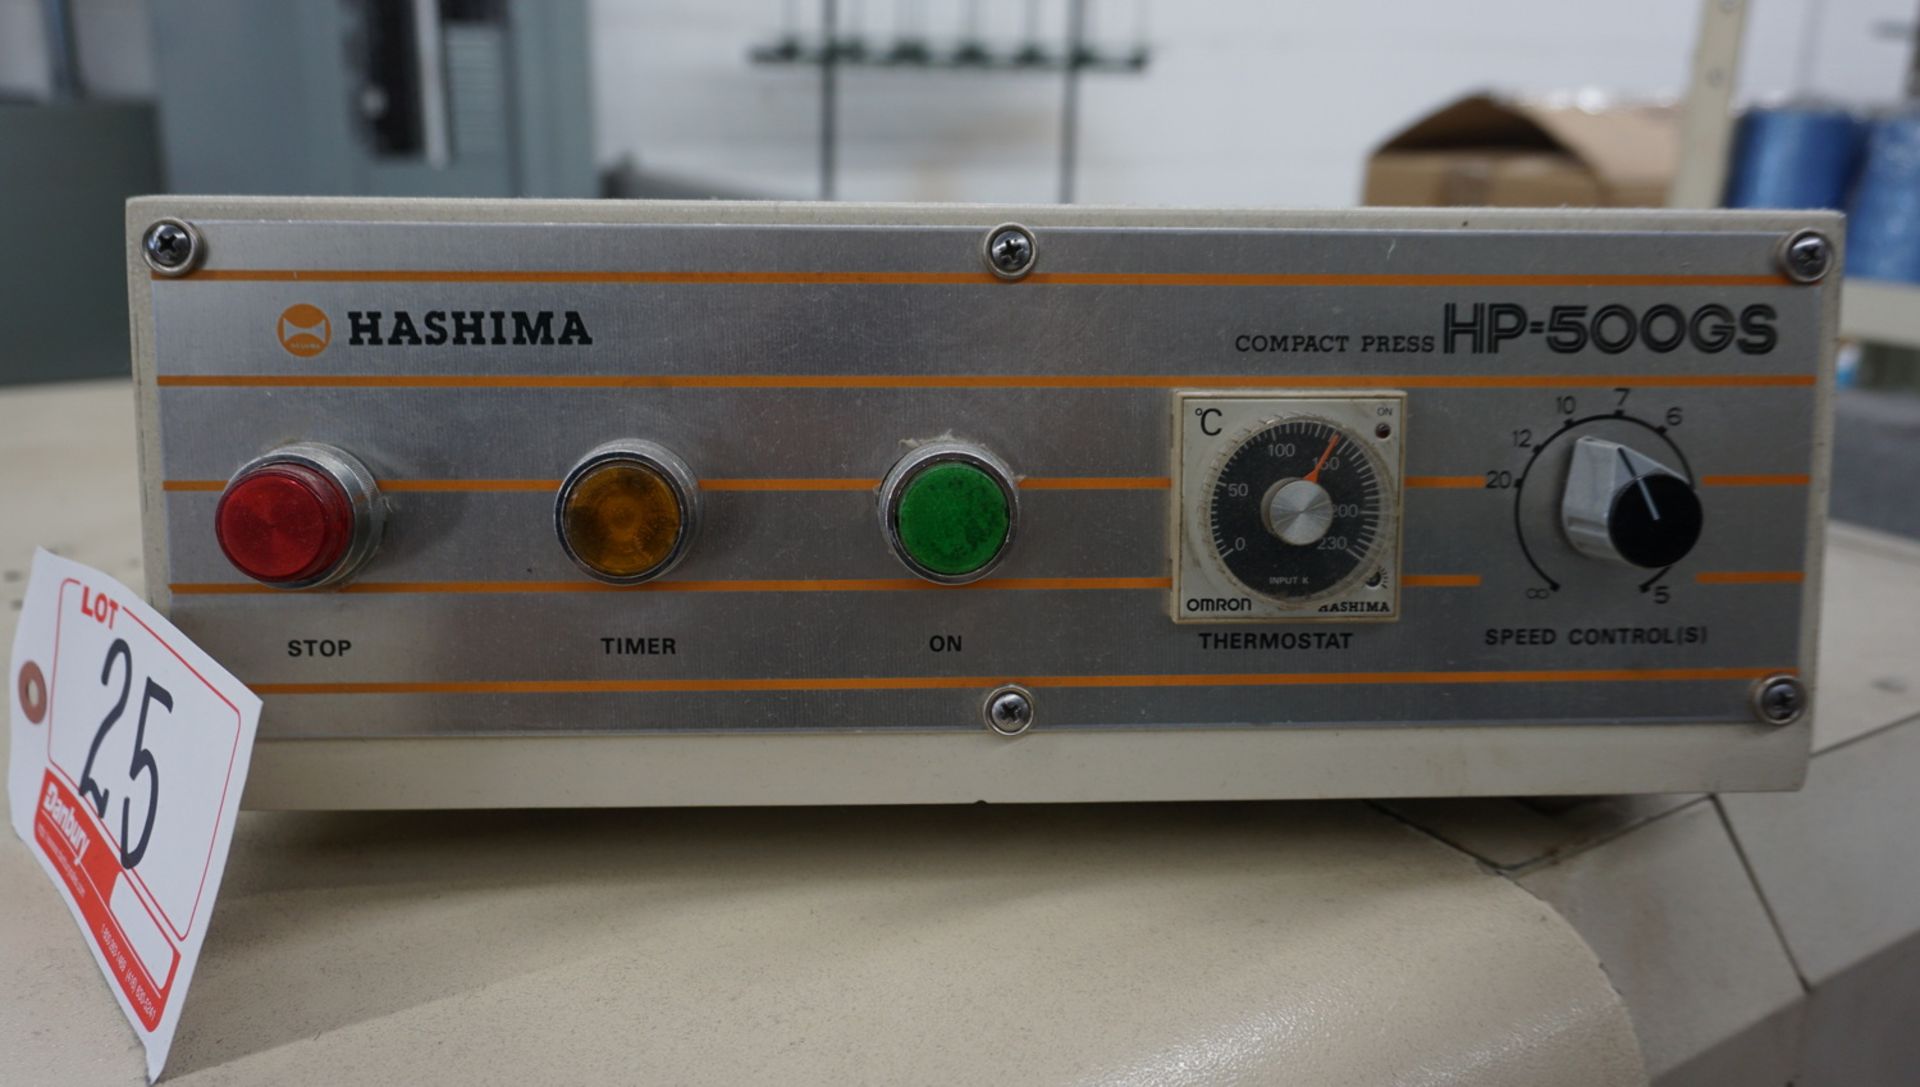 HASHIMA HP-500GS FUSING MACHINE, S/N 09891 - Image 2 of 4